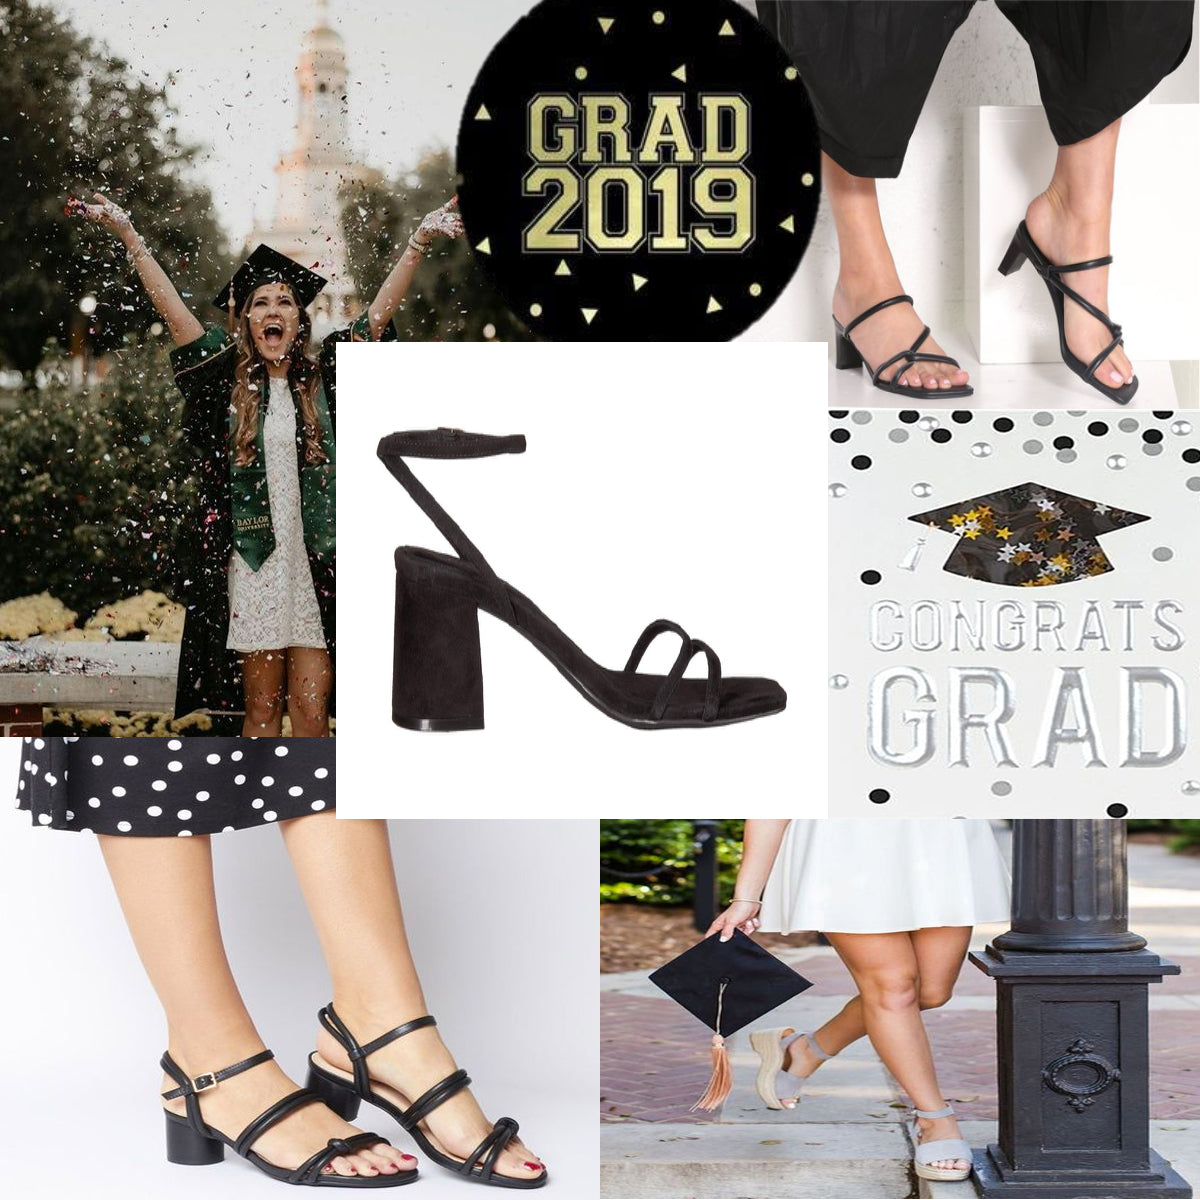 Block heeled grad shoes